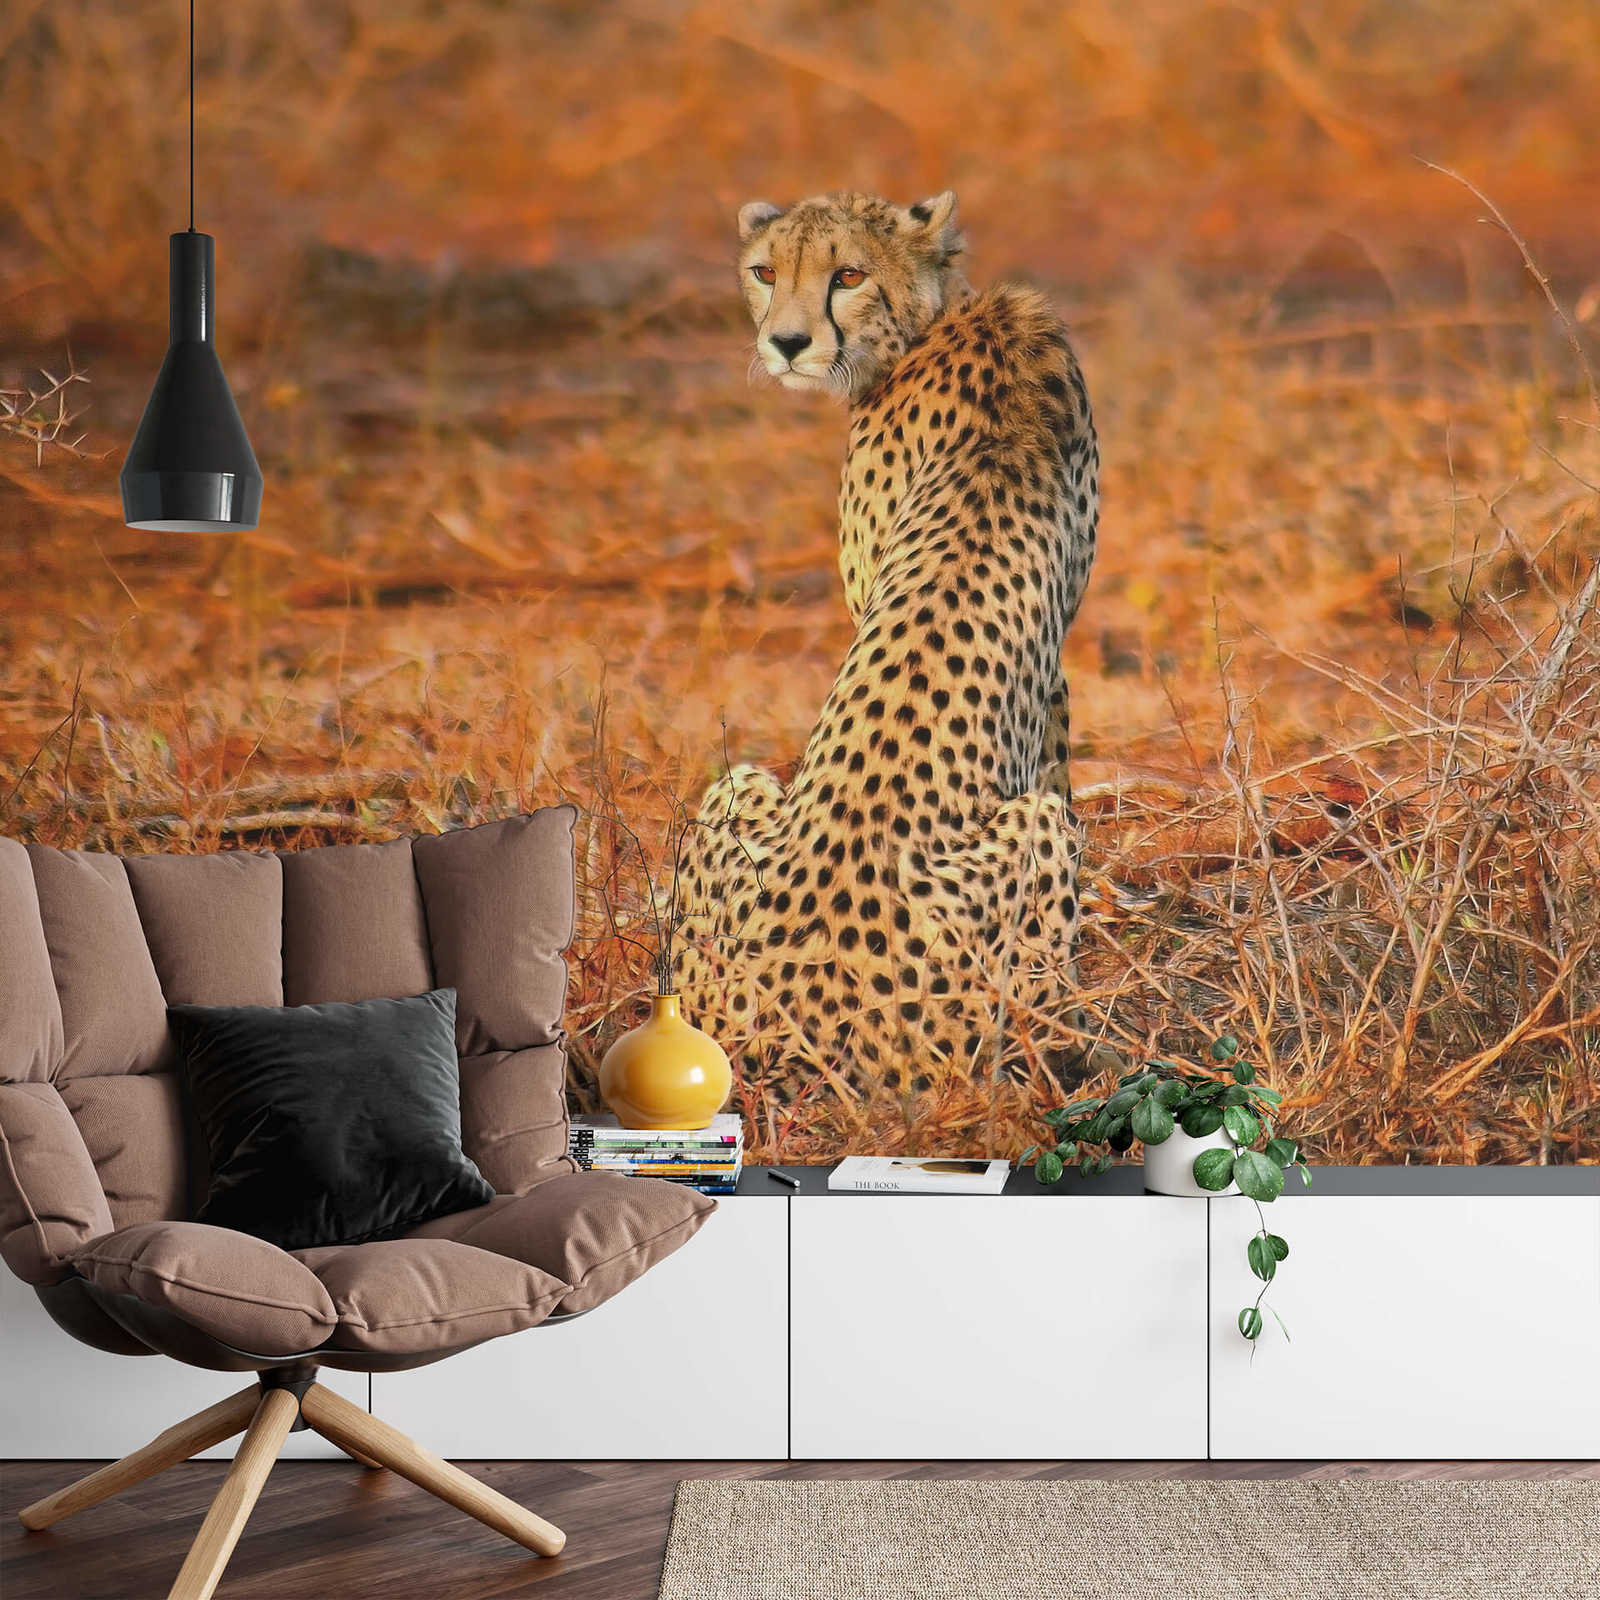             Papel pintado "Leopardo en la naturaleza" - Amarillo, naranja, negro
        